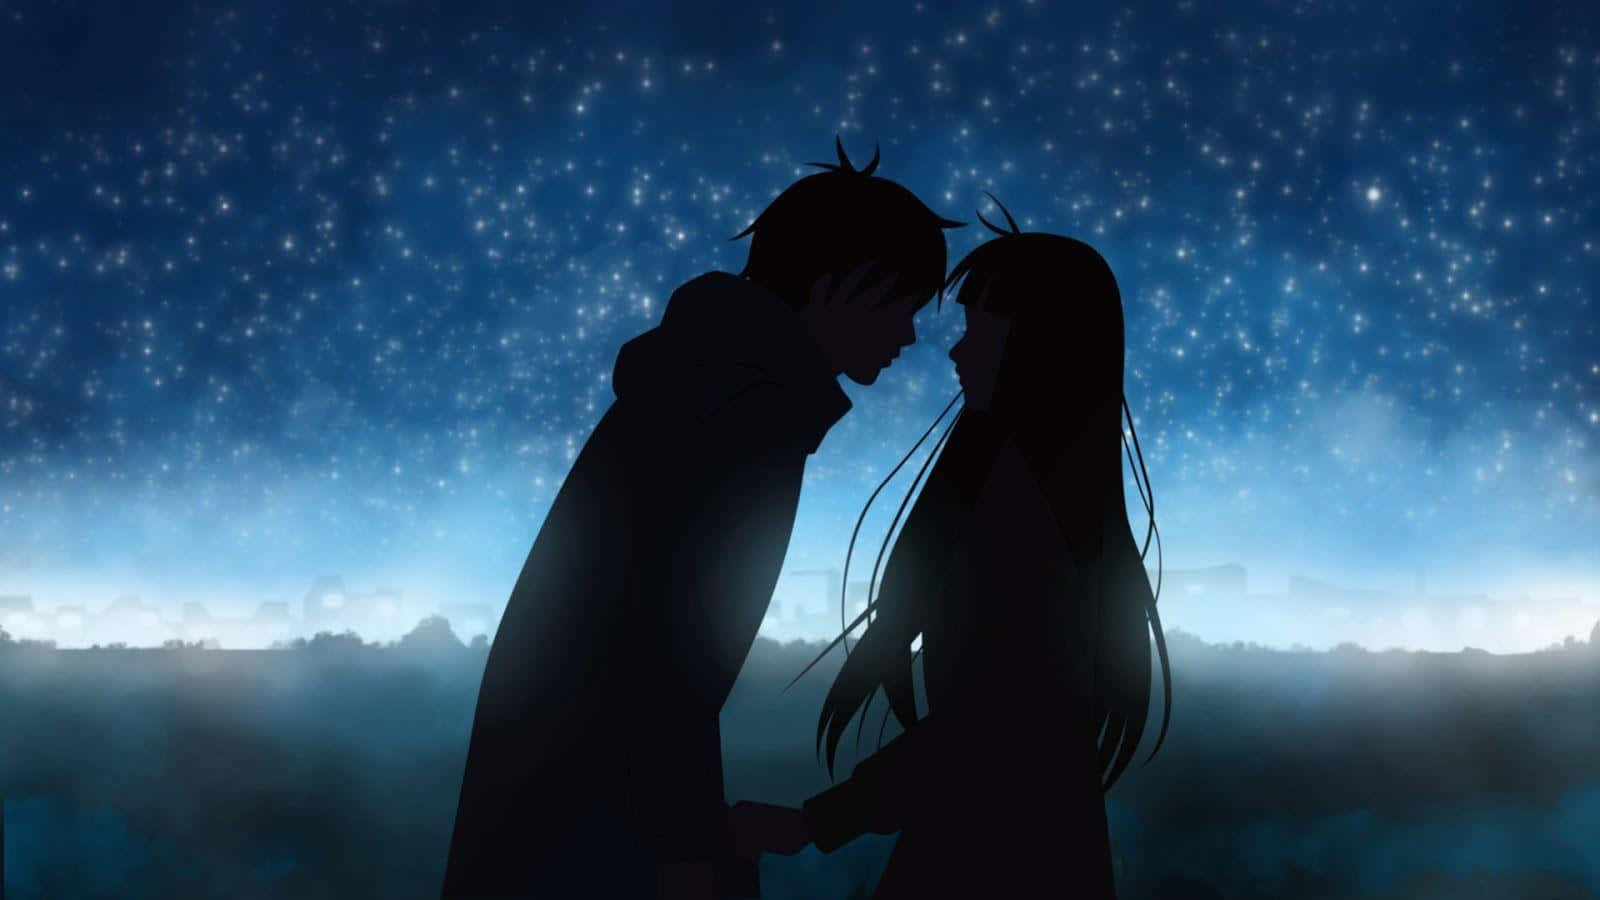 Romantischesanime-paar In Silhouette Vor Blauem Nachthimmel Wallpaper